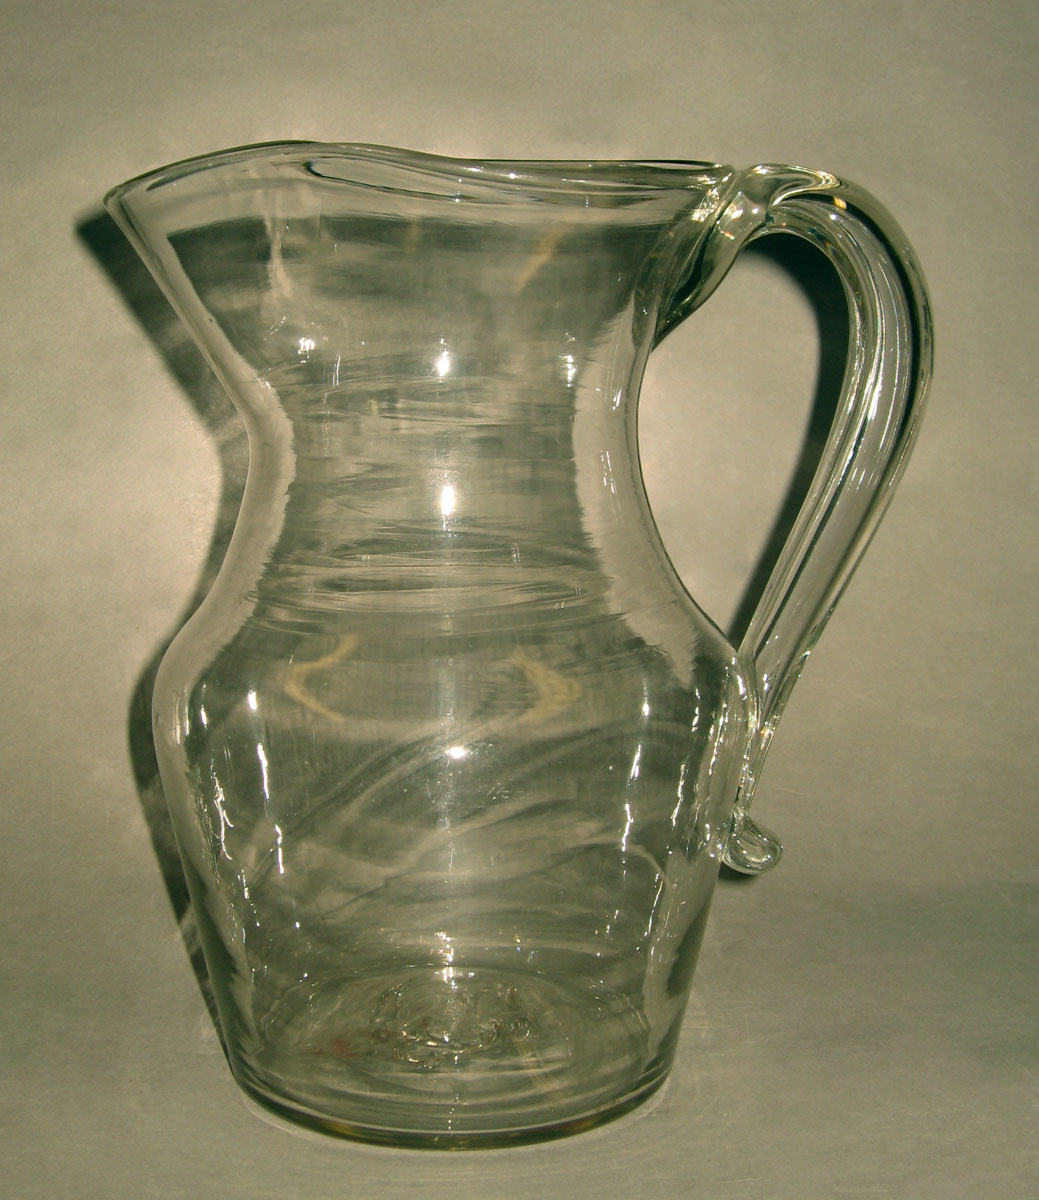 1973.0464.001 Glass jug